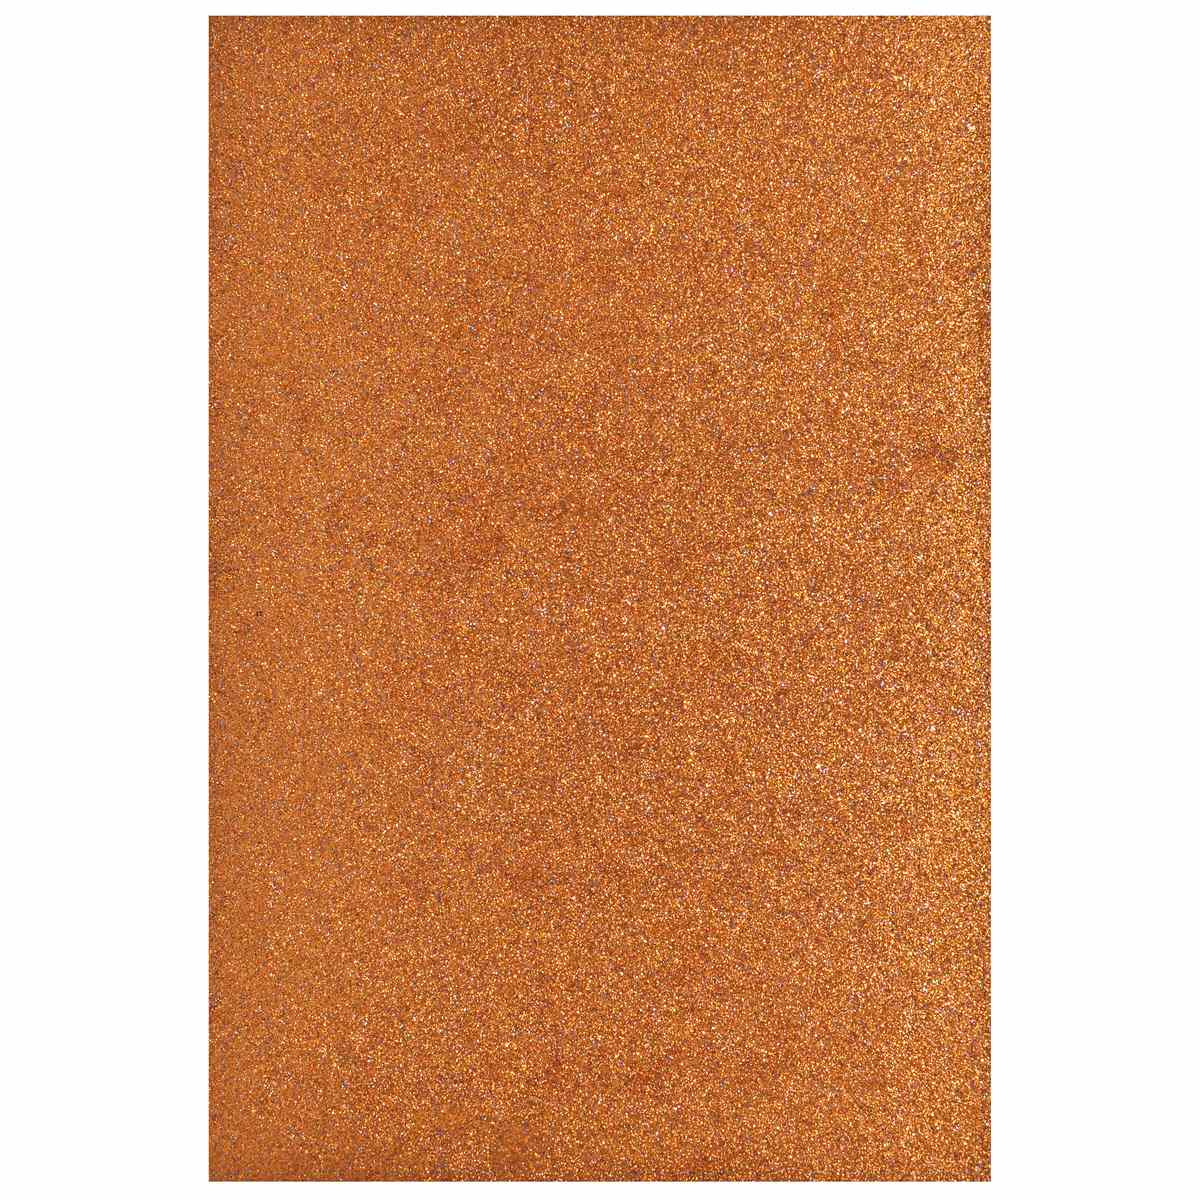 jags-mumbai Glitter Paper & Foam Sheet A4 Glitter Foam Sheet Without Stk Orange 00196OE